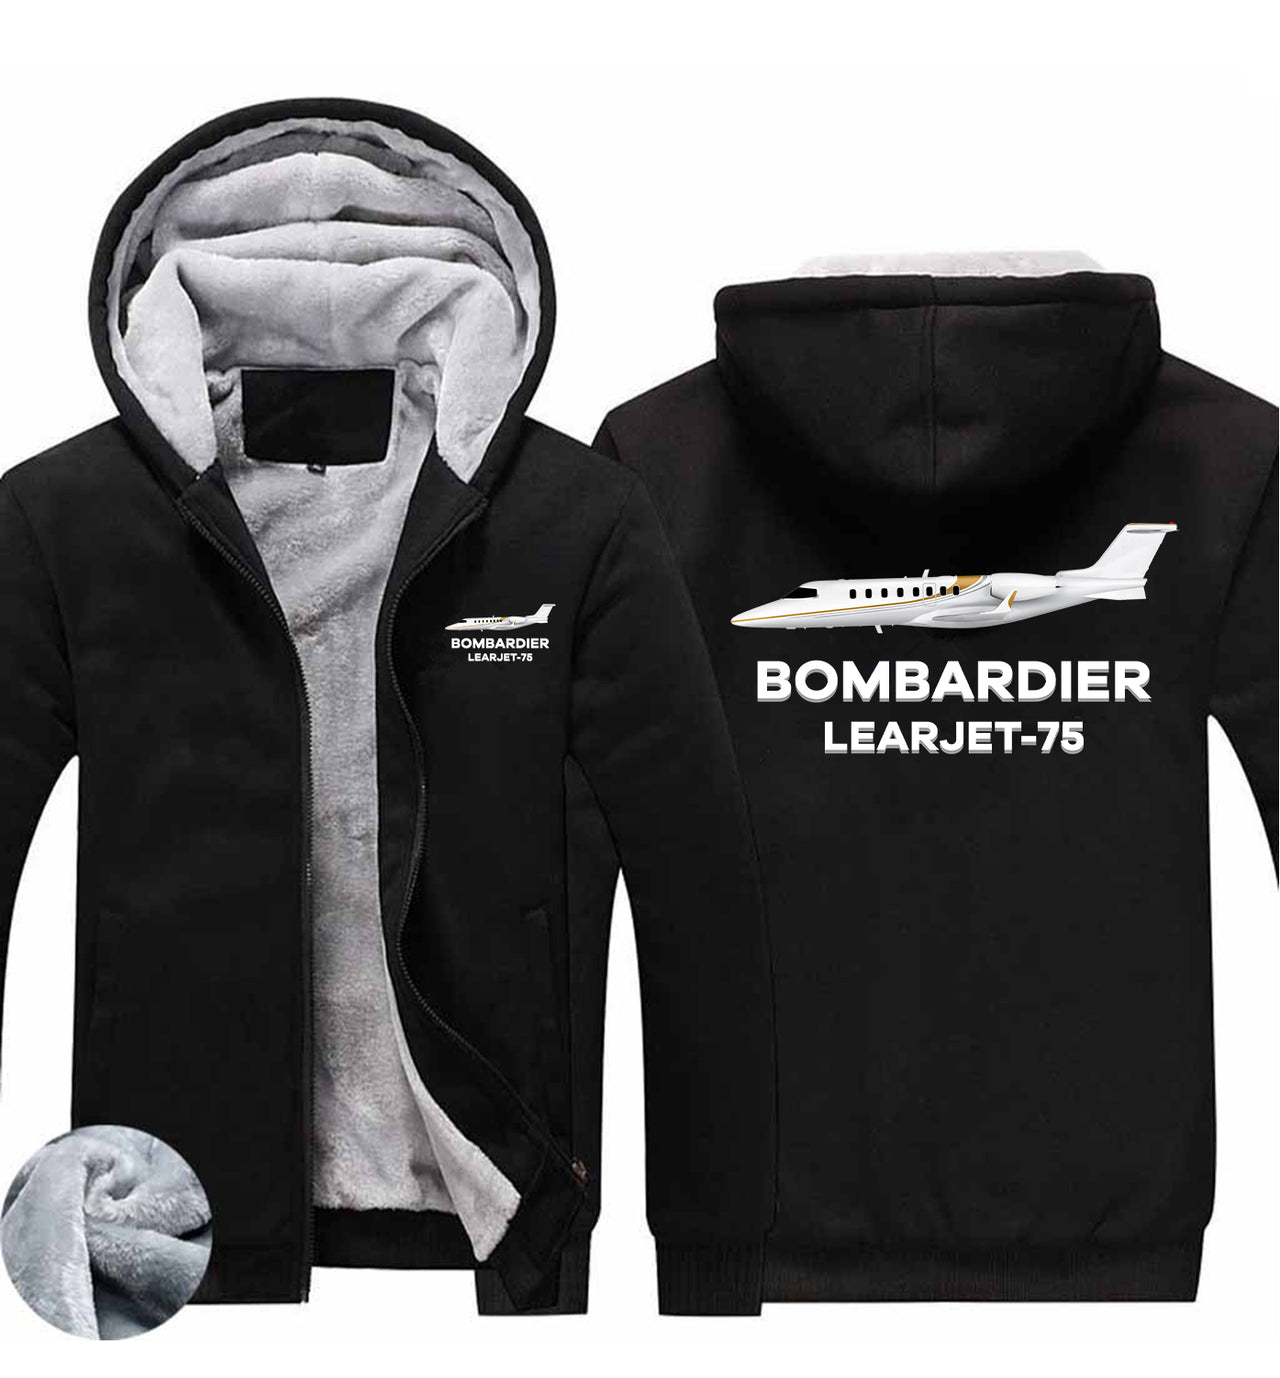 The Bombardier Learjet 75 Designed Zipped Sweatshirts